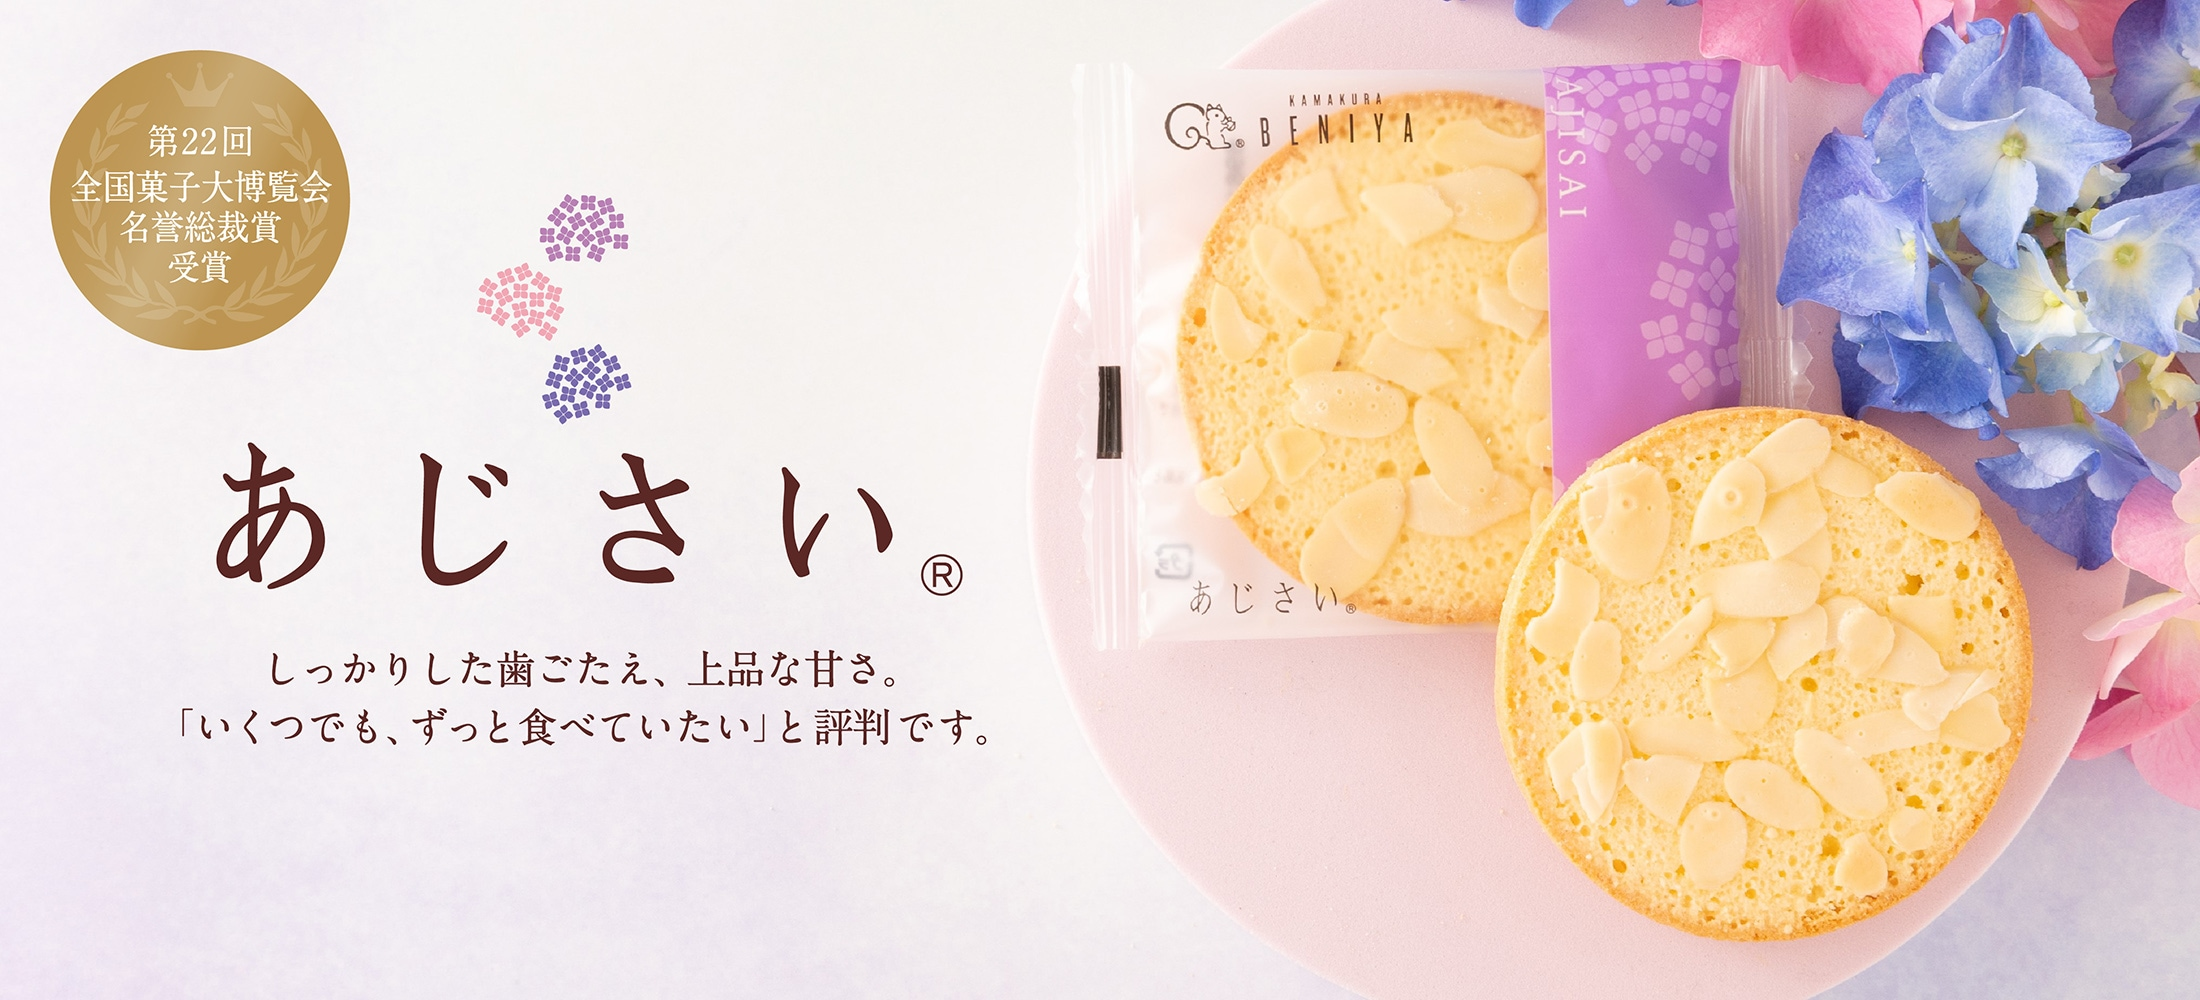 あじさい～「練乳×アーモンド」上品な甘さの焼き菓子～ | 鎌倉紅谷 公式オンラインショップ